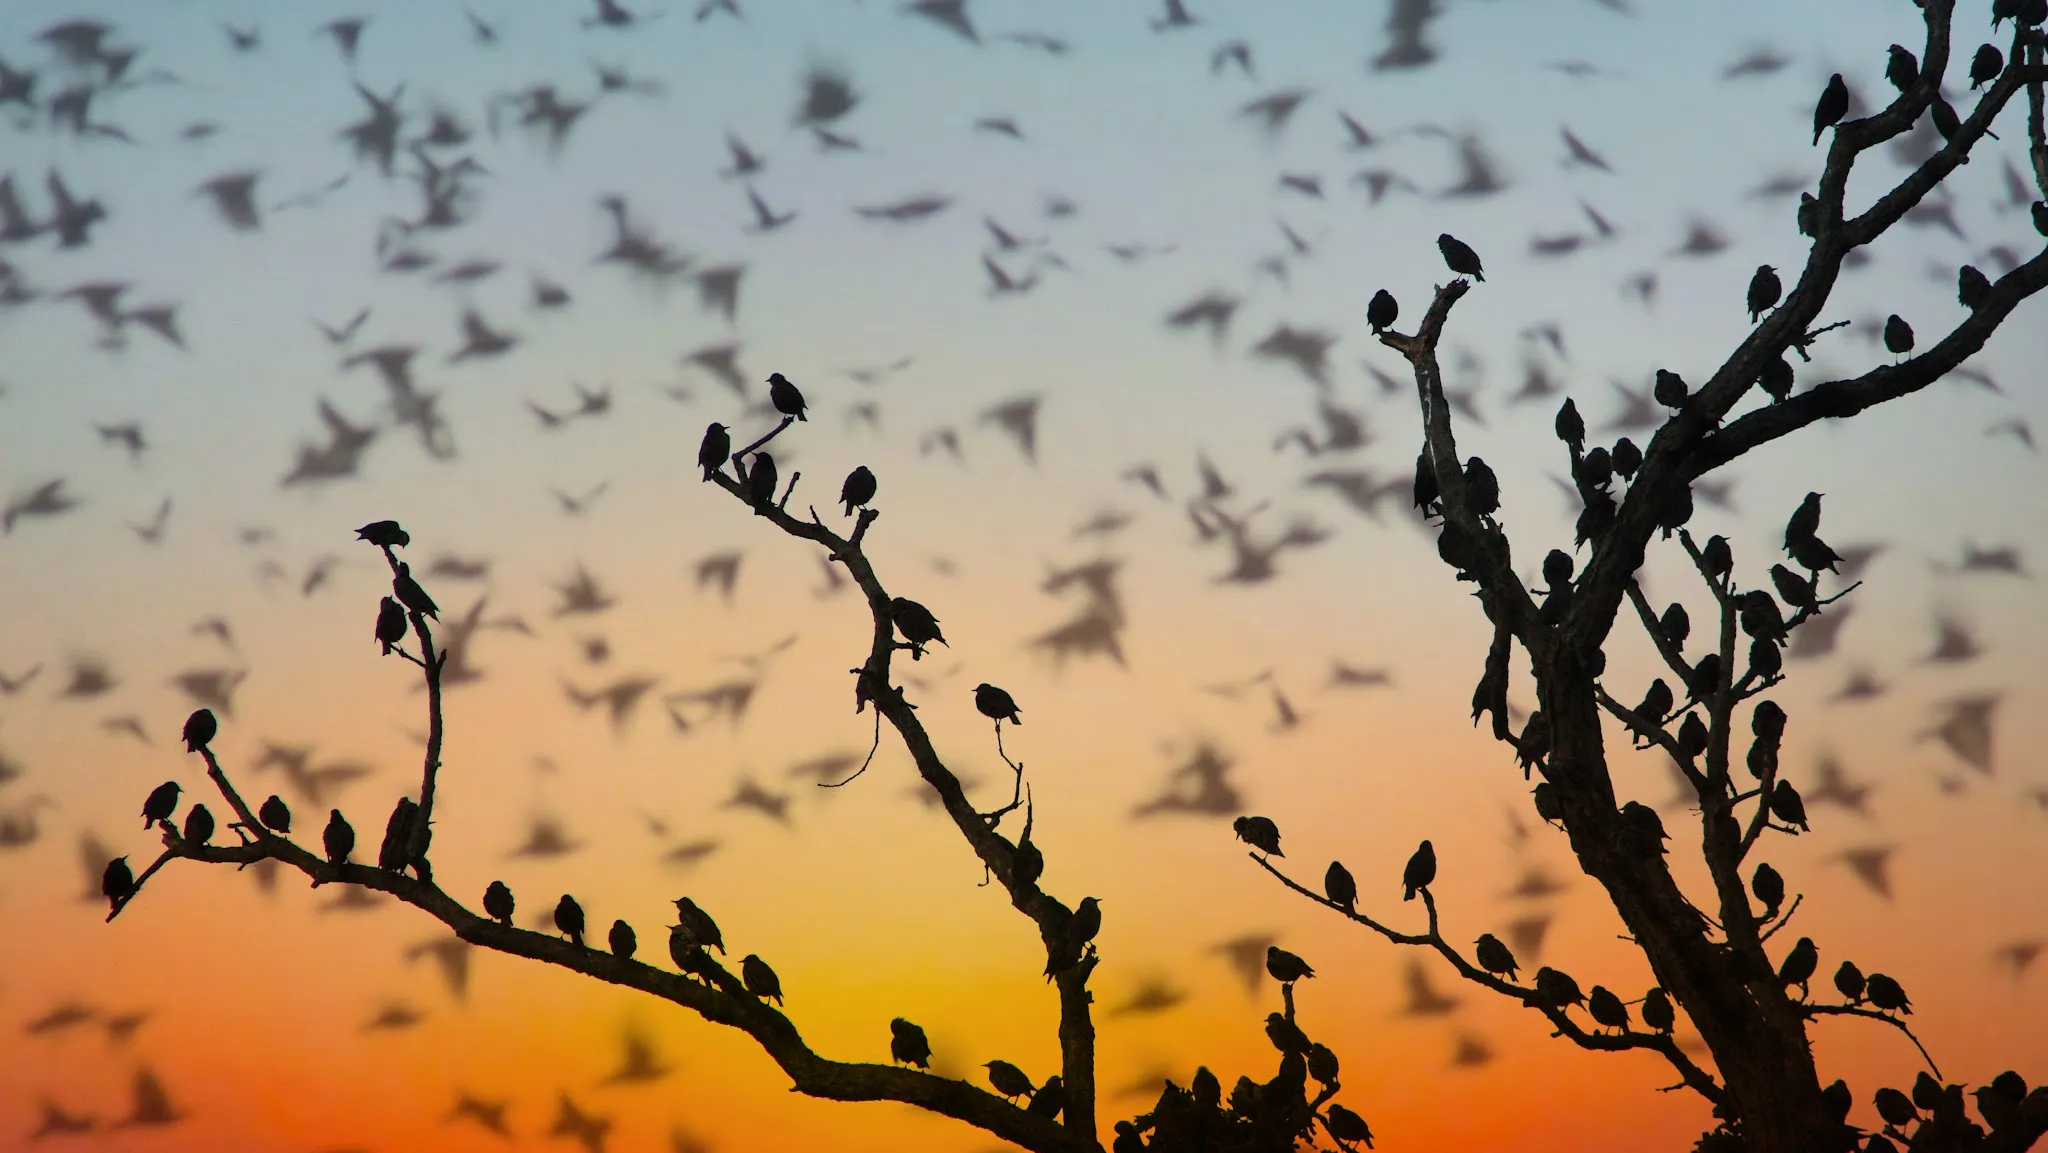 Жизнь мигрирующих птиц. Птицы на дереве. Миграция птиц. Стая птиц на дереве. Дерево солнце птицы.